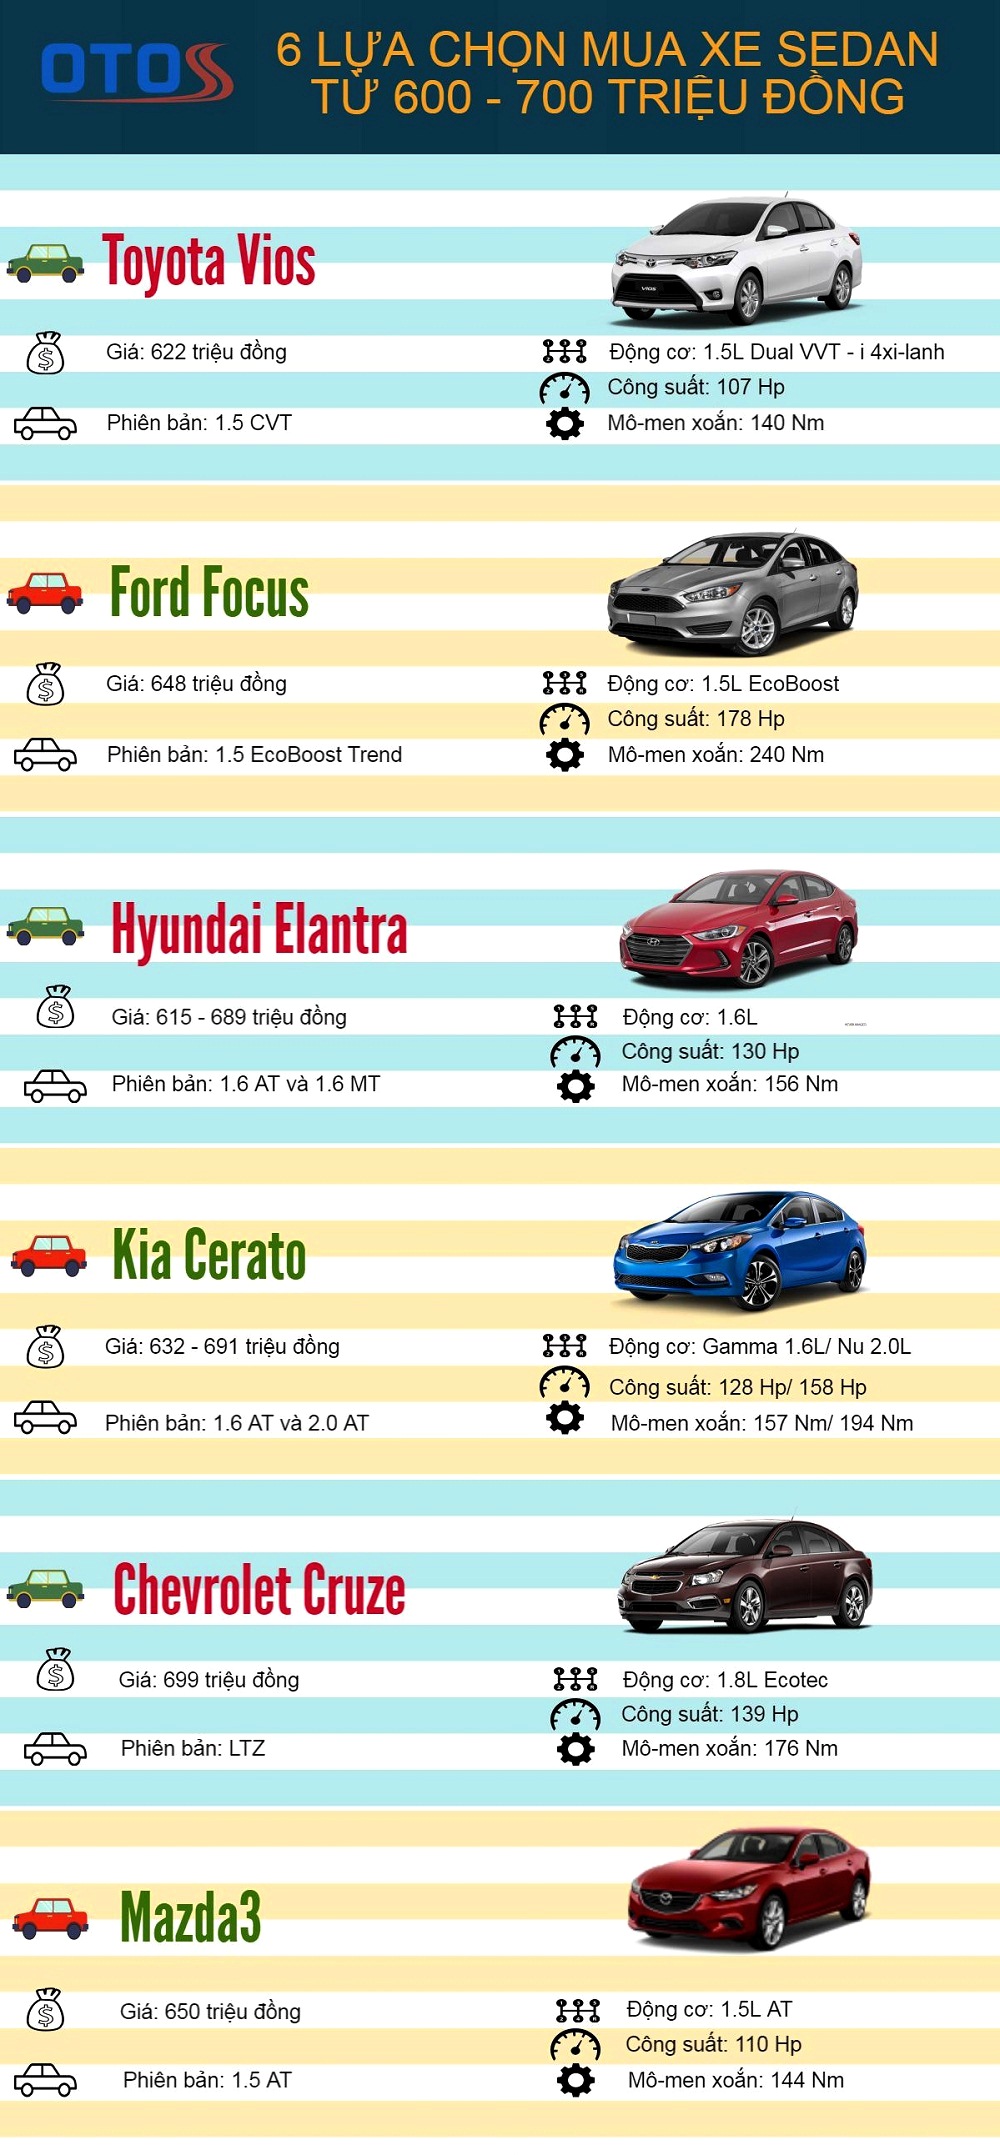 [Infographic] - 6 lựa chọn mua xe sedan từ 600 – 700 triệu đồng